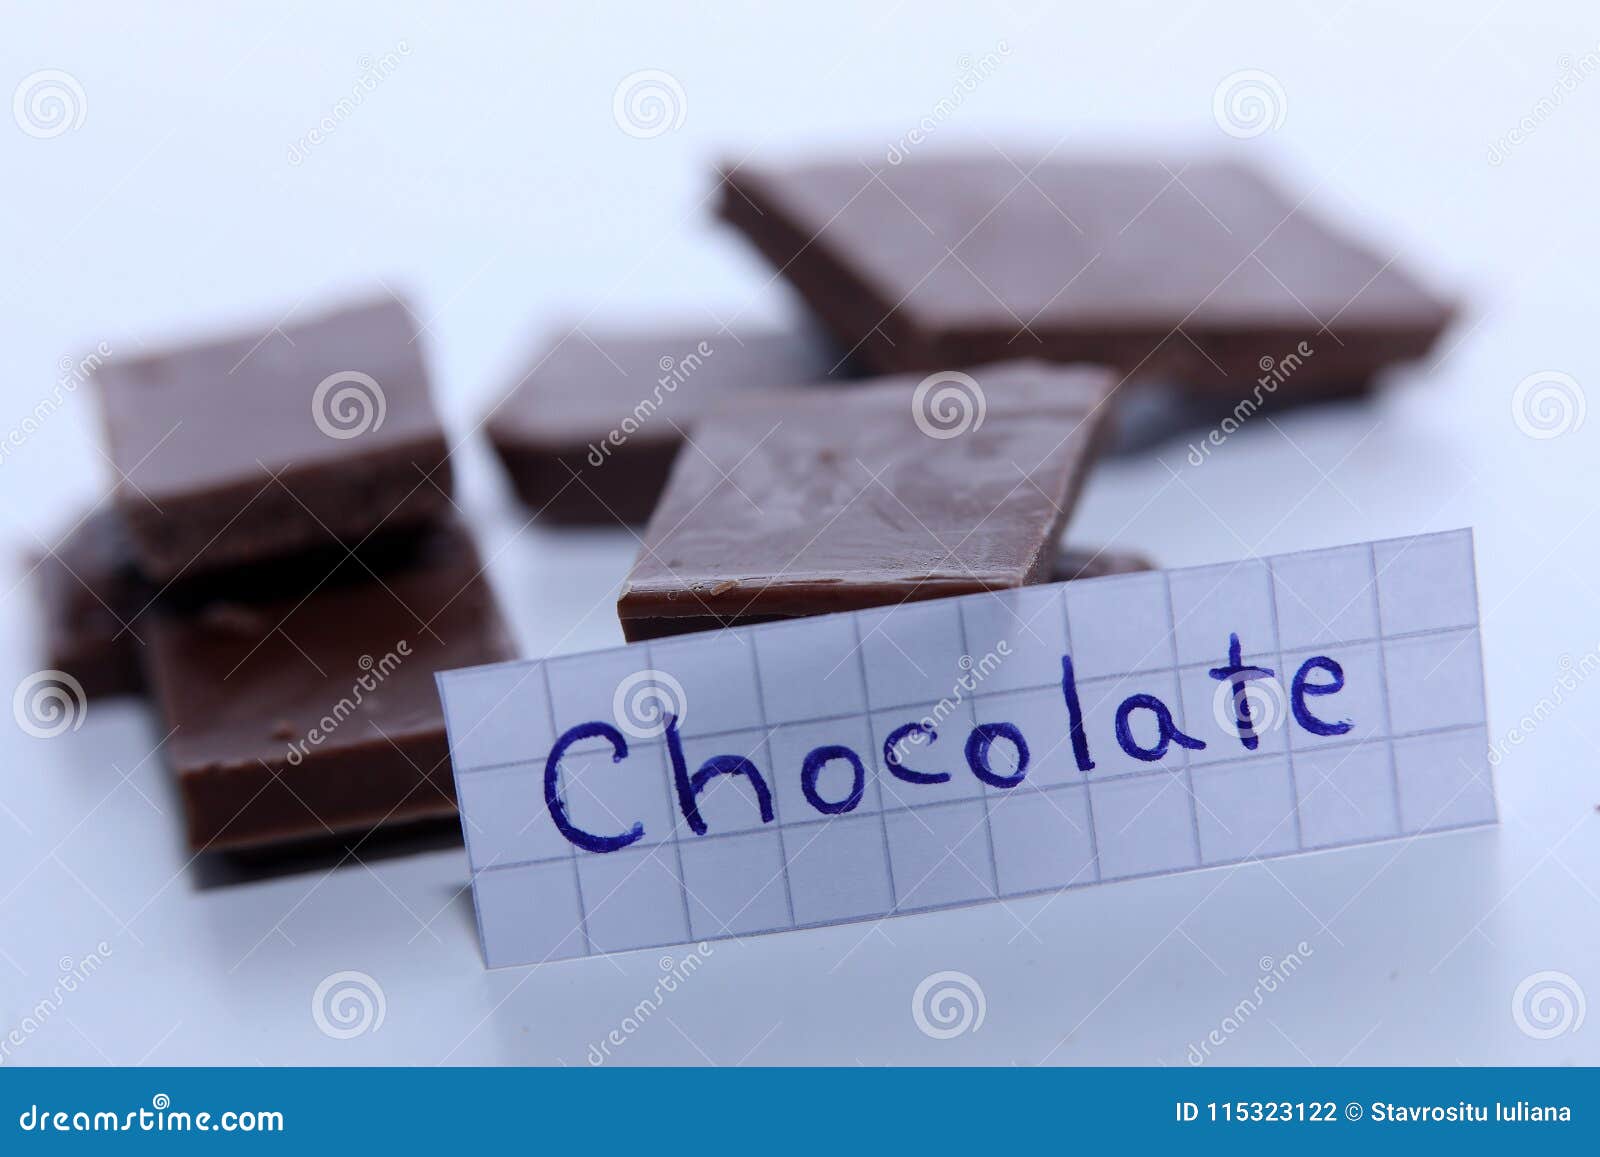 Шоколадки по английский. Как пишется по английски шоколад. Как по английски ШИКОЛАД. Иностранные слова шоколад. Как будет по английски шоколад